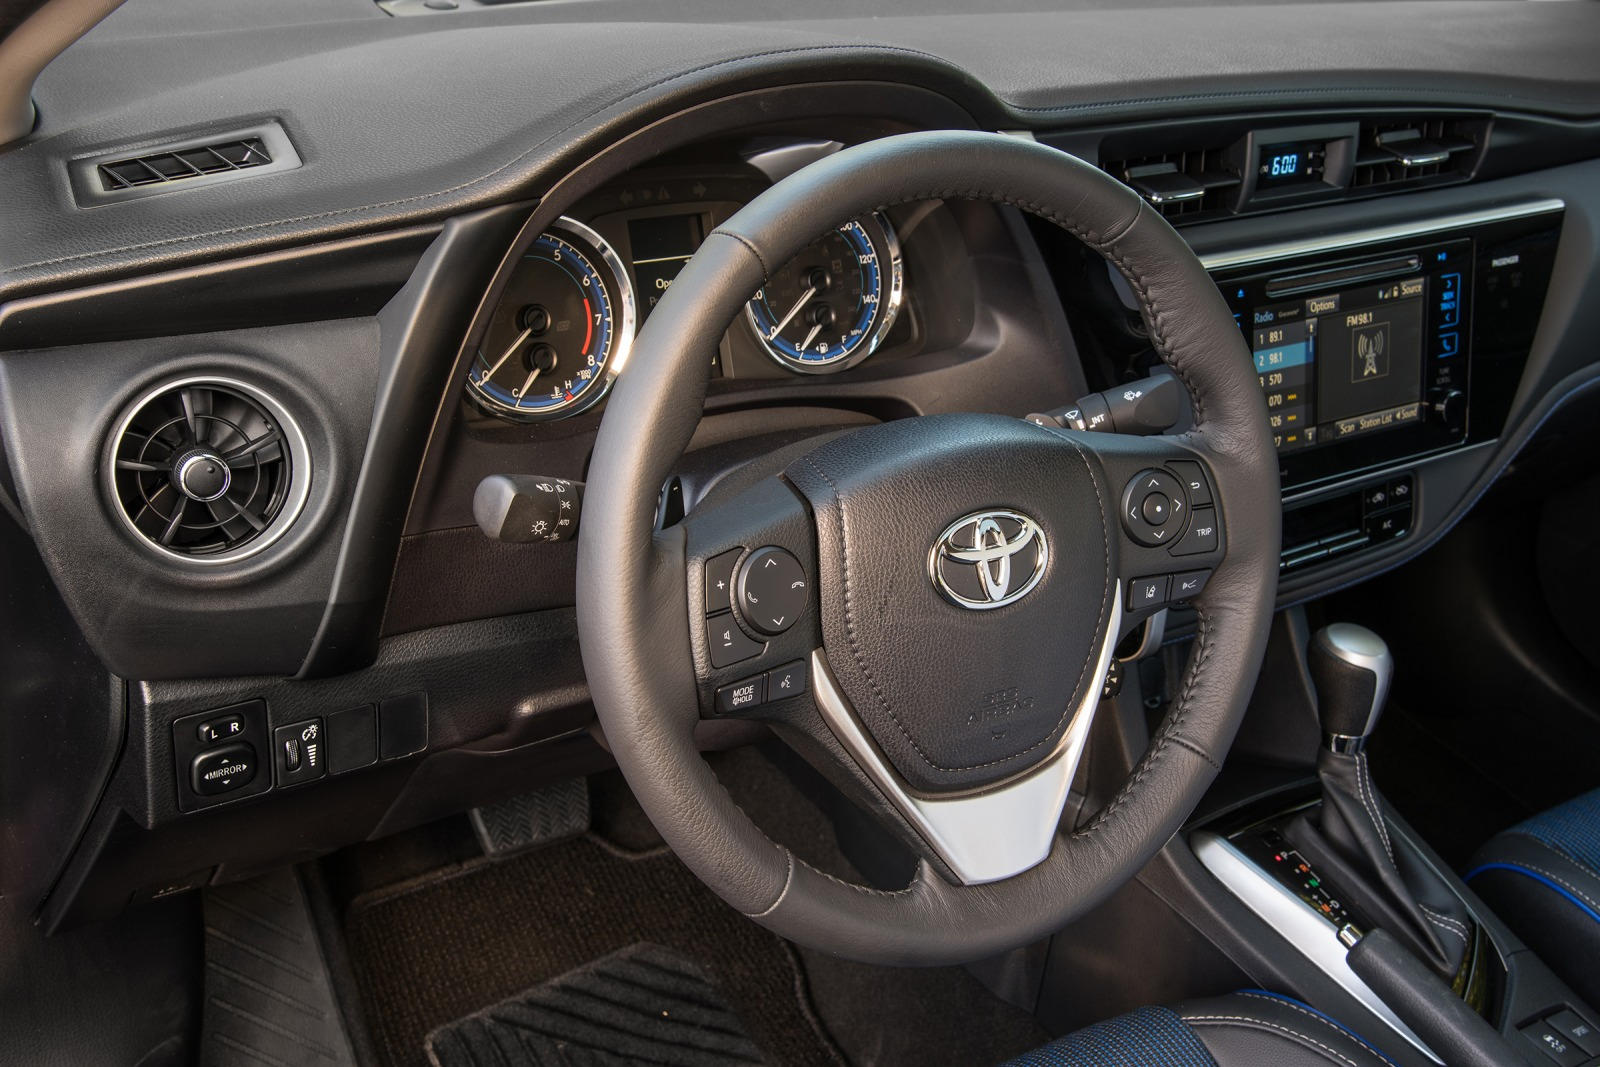 2017 Toyota Corolla Sedan Interior Photos | CarBuzz